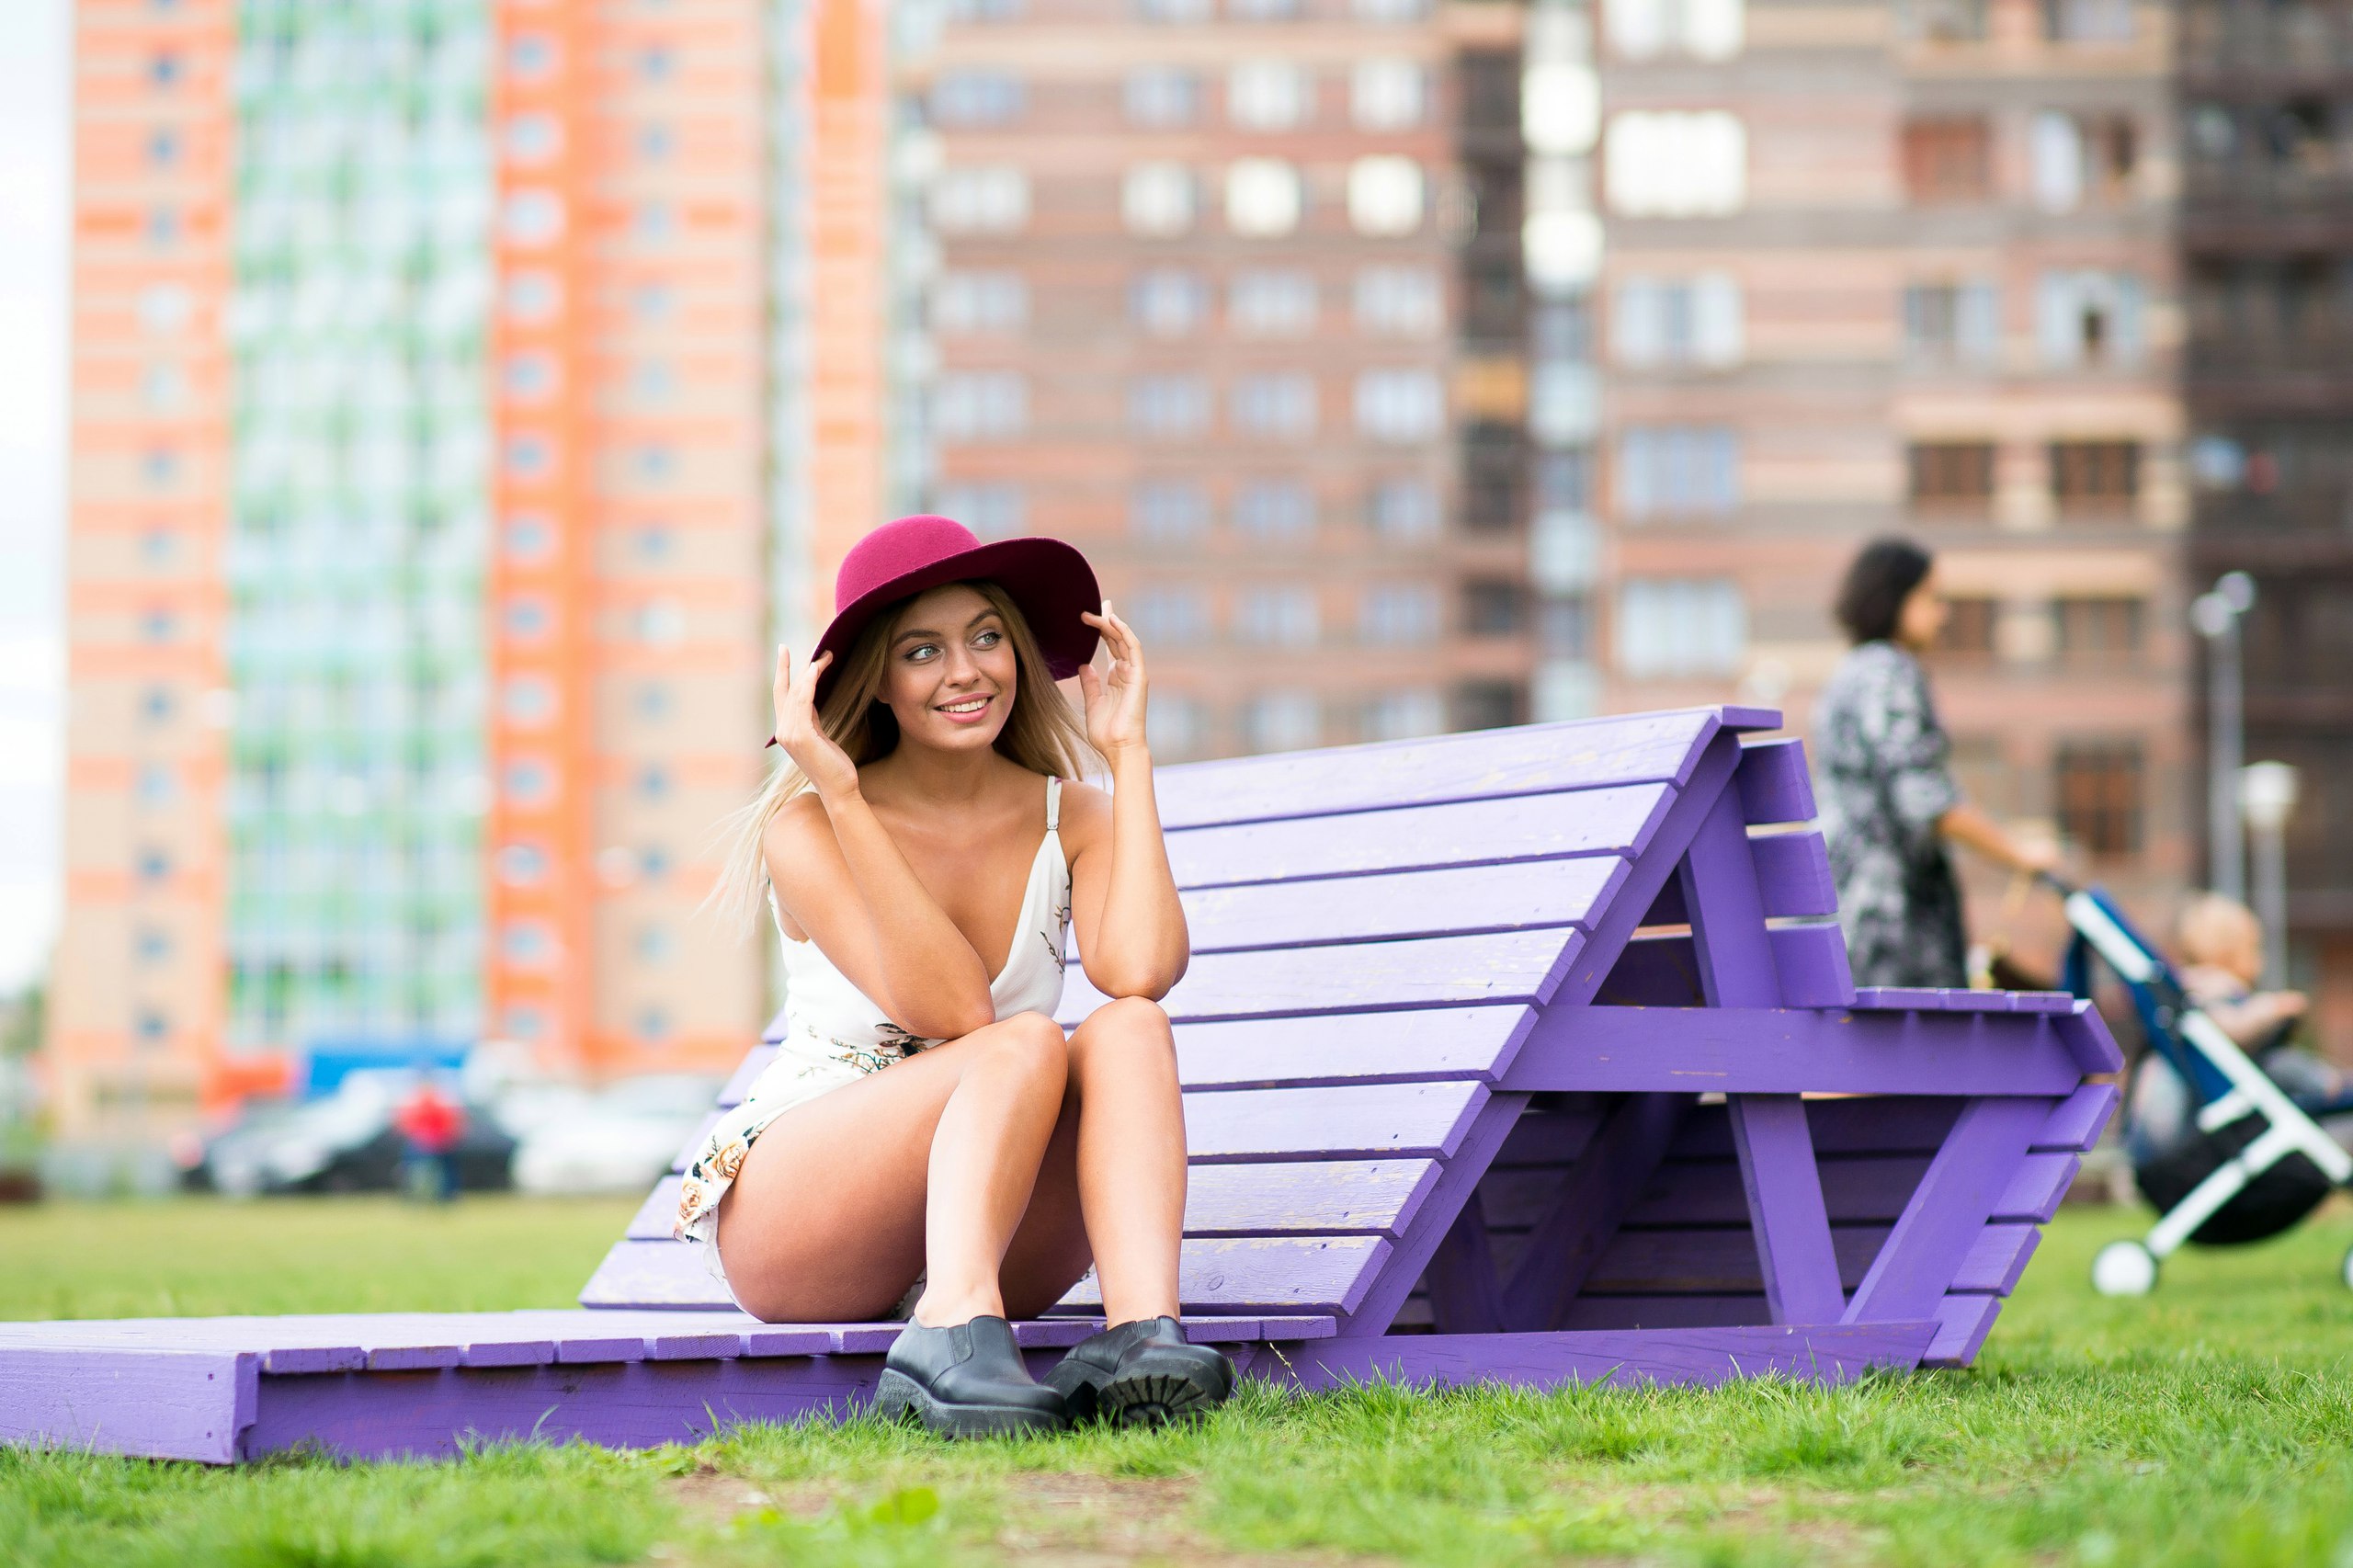 Bench Women Outdoors Sitting Hat Women Model Sun Dress Millinery 2560x1706